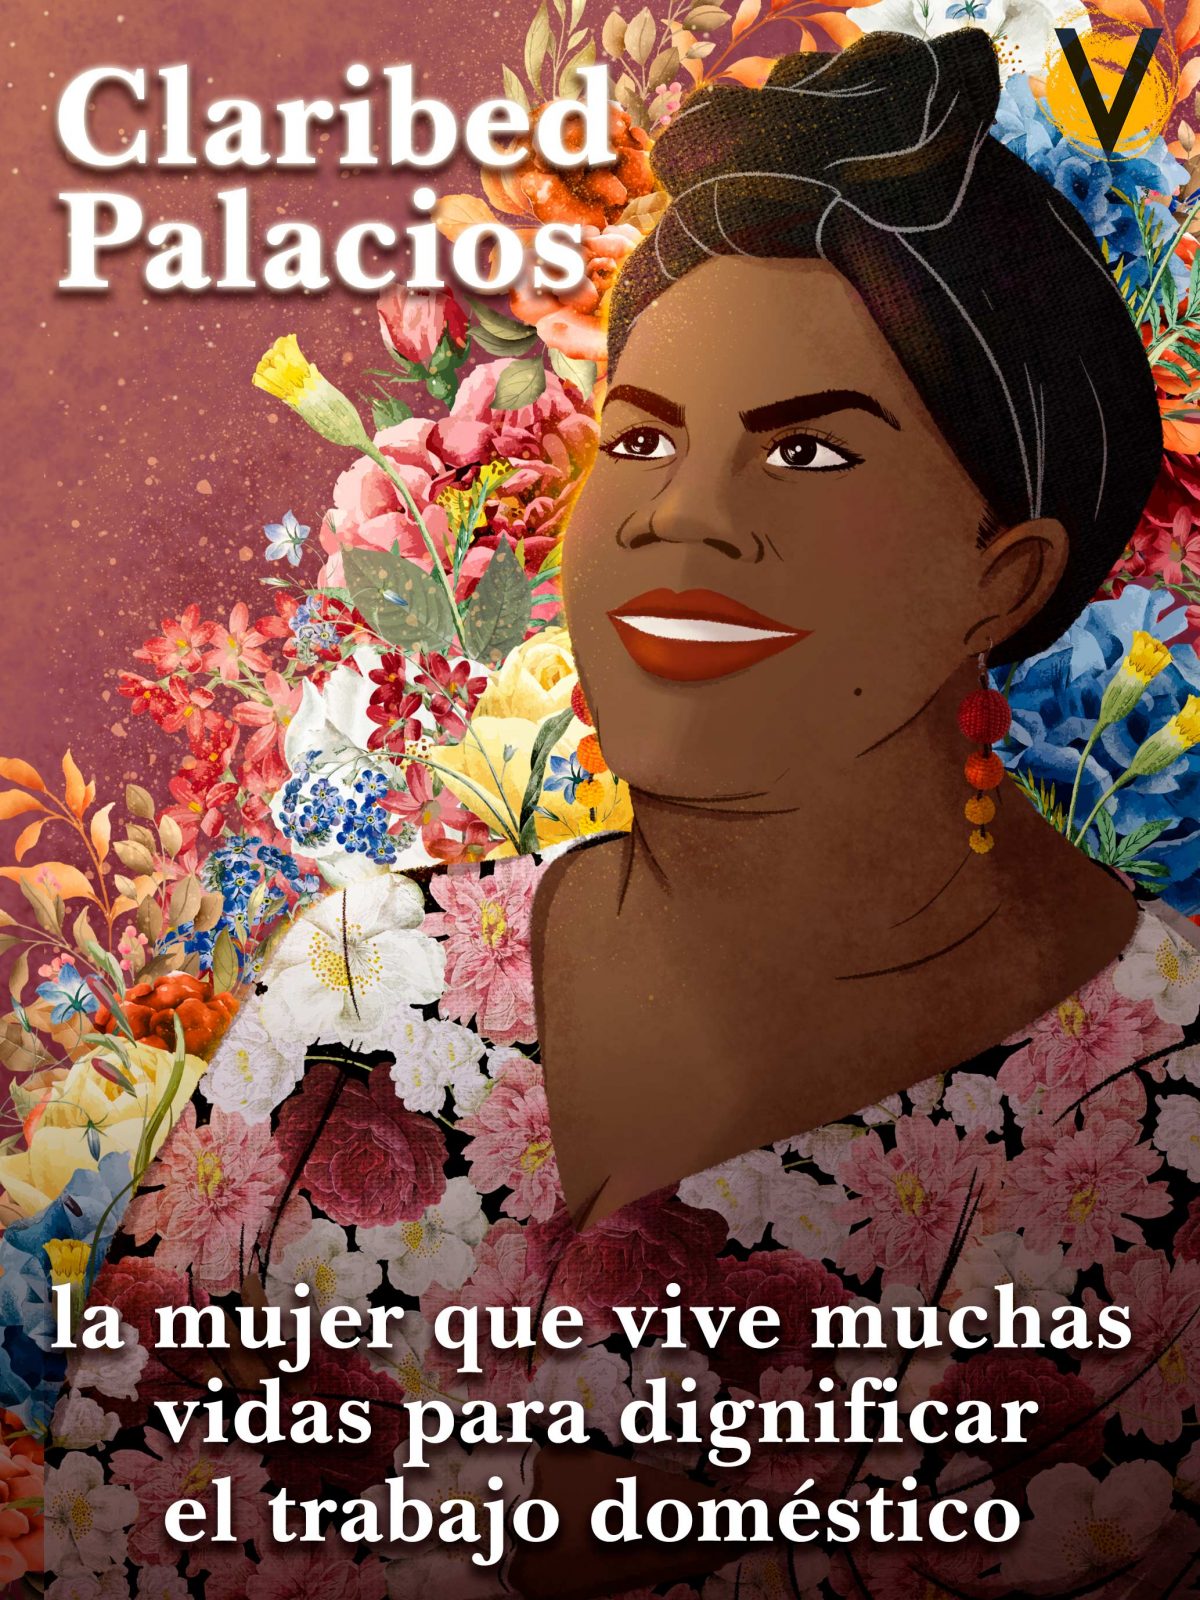 Claribed Palacios